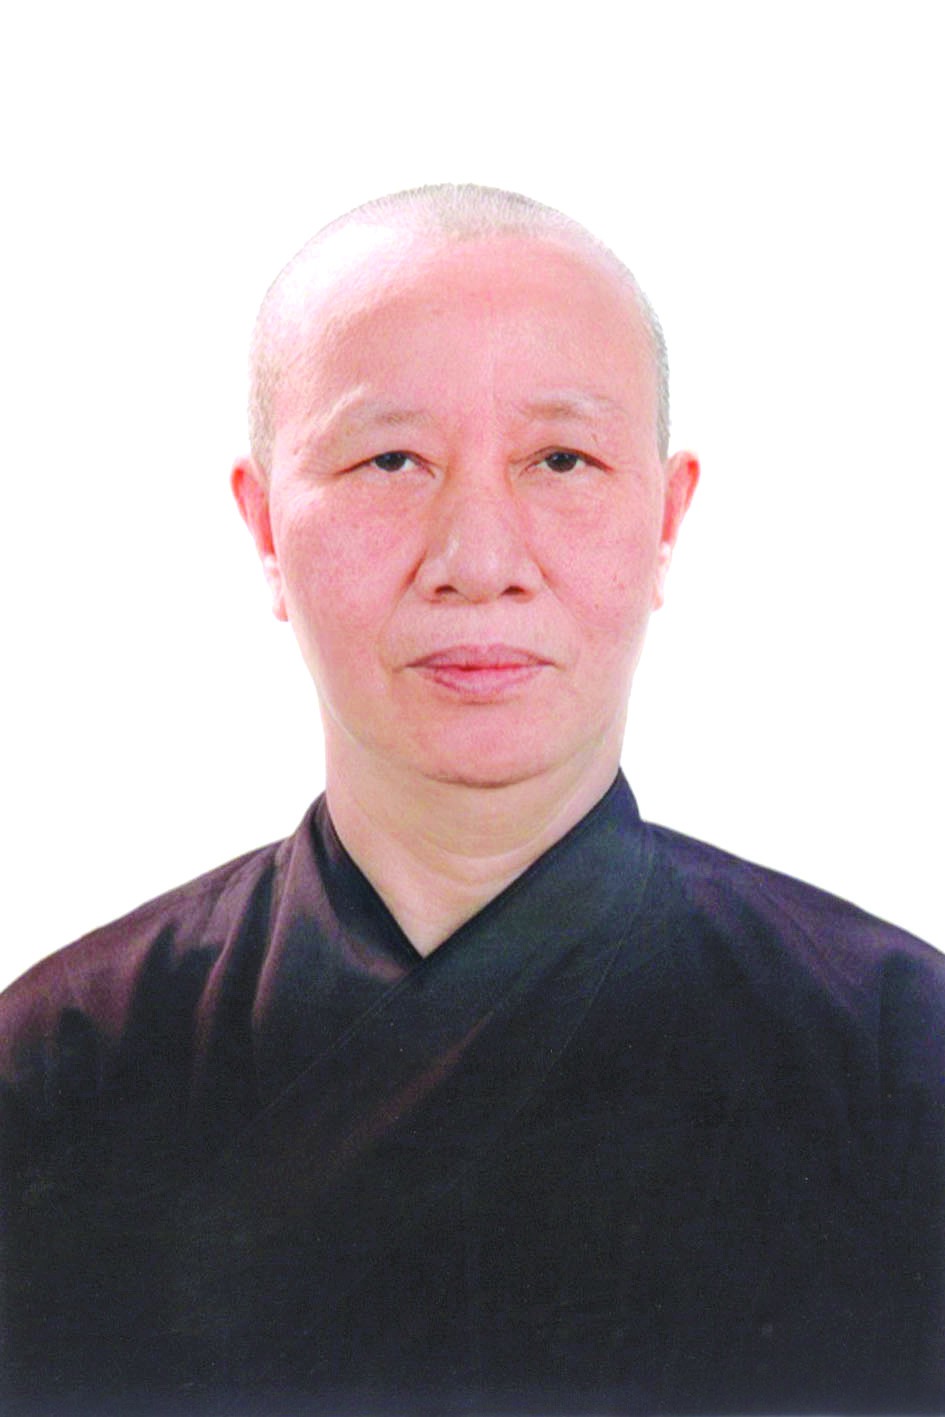 Chương trình hành động của Phó ban Ni giới Thành hội Phật giáo Hà Nội Nguyễn Thị Chắt, ứng cử viên đại biểu HĐND TP Hà Nội nhiệm kỳ 2021 - 2026 - Ảnh 1